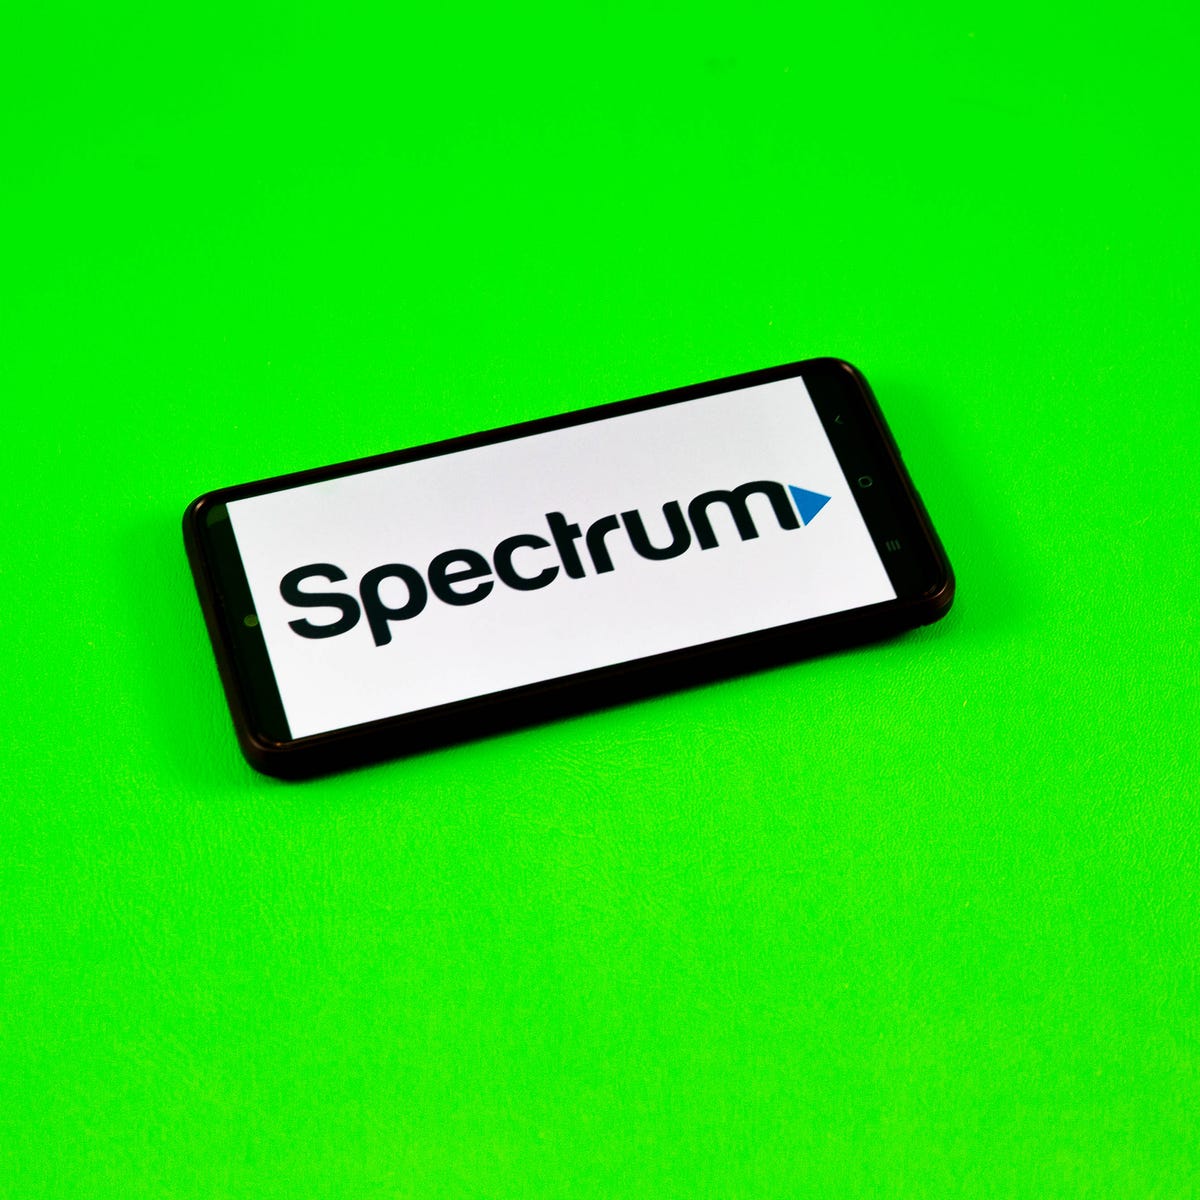 Does Spectrum Throttle Internet Speeds